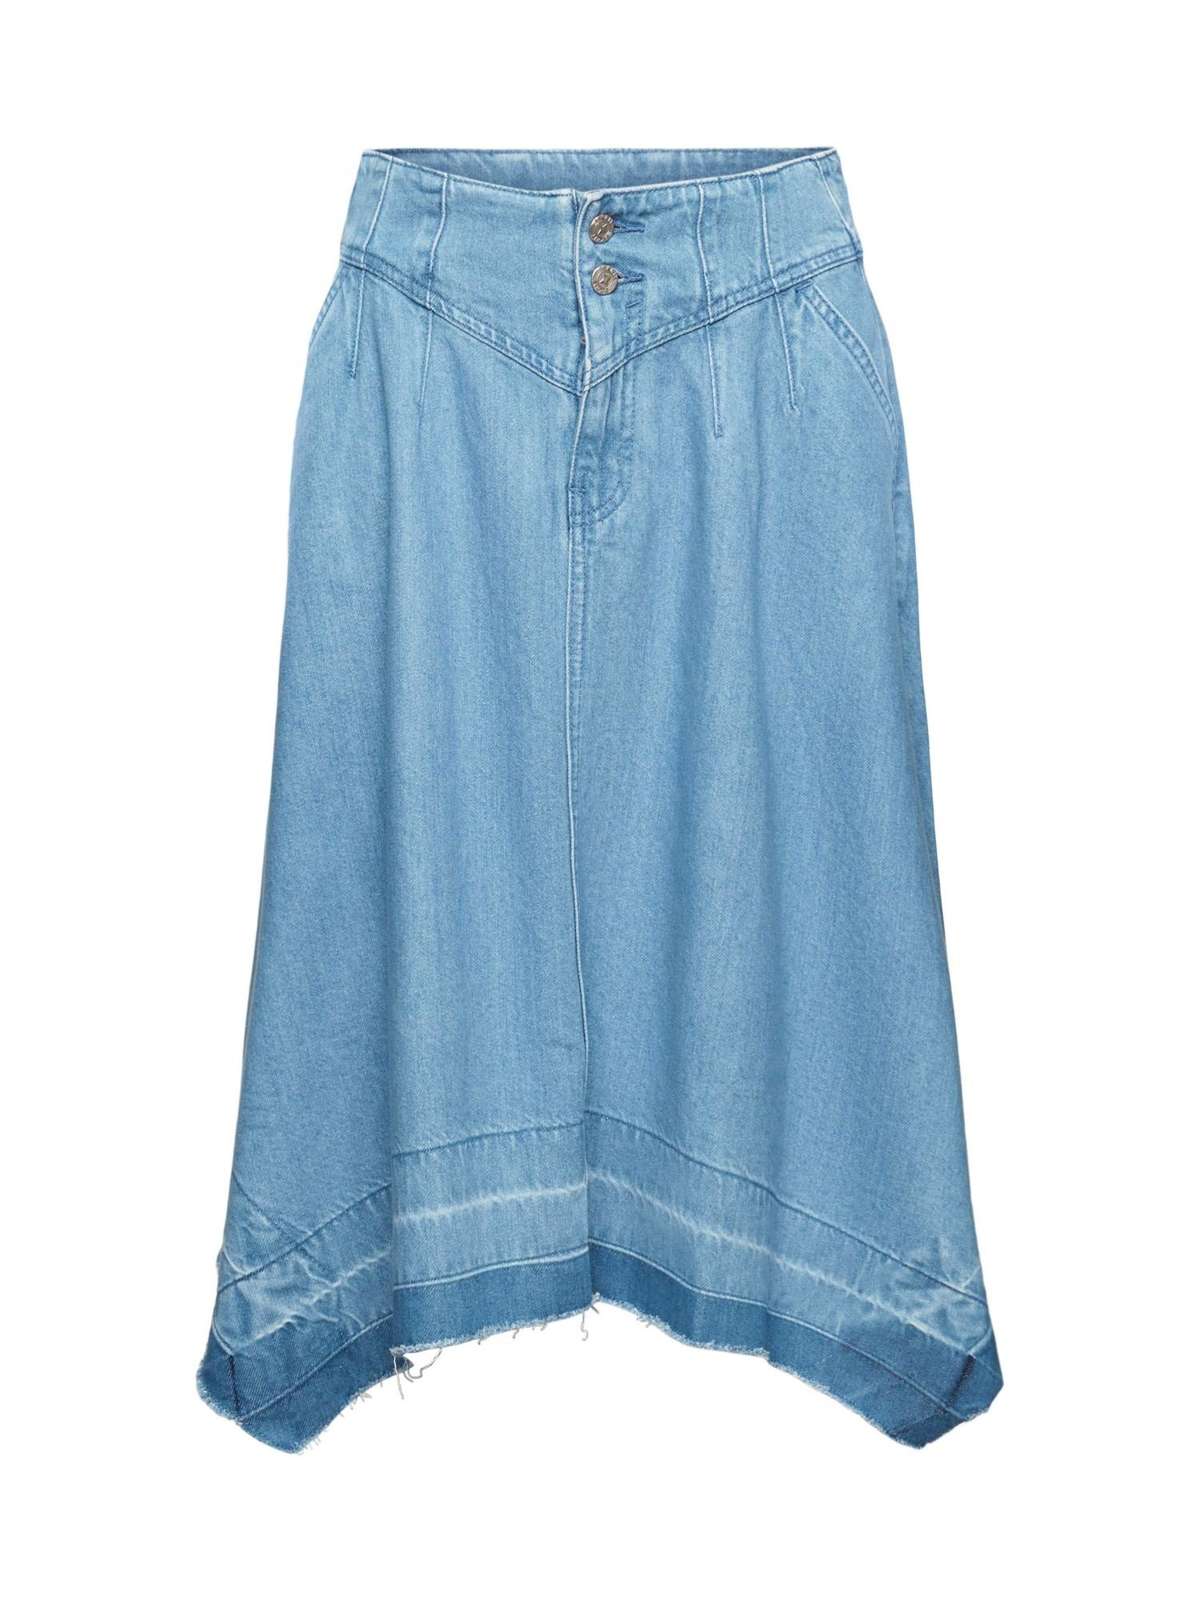 Джинсовая юбка Асимметричная джинсовая юбка